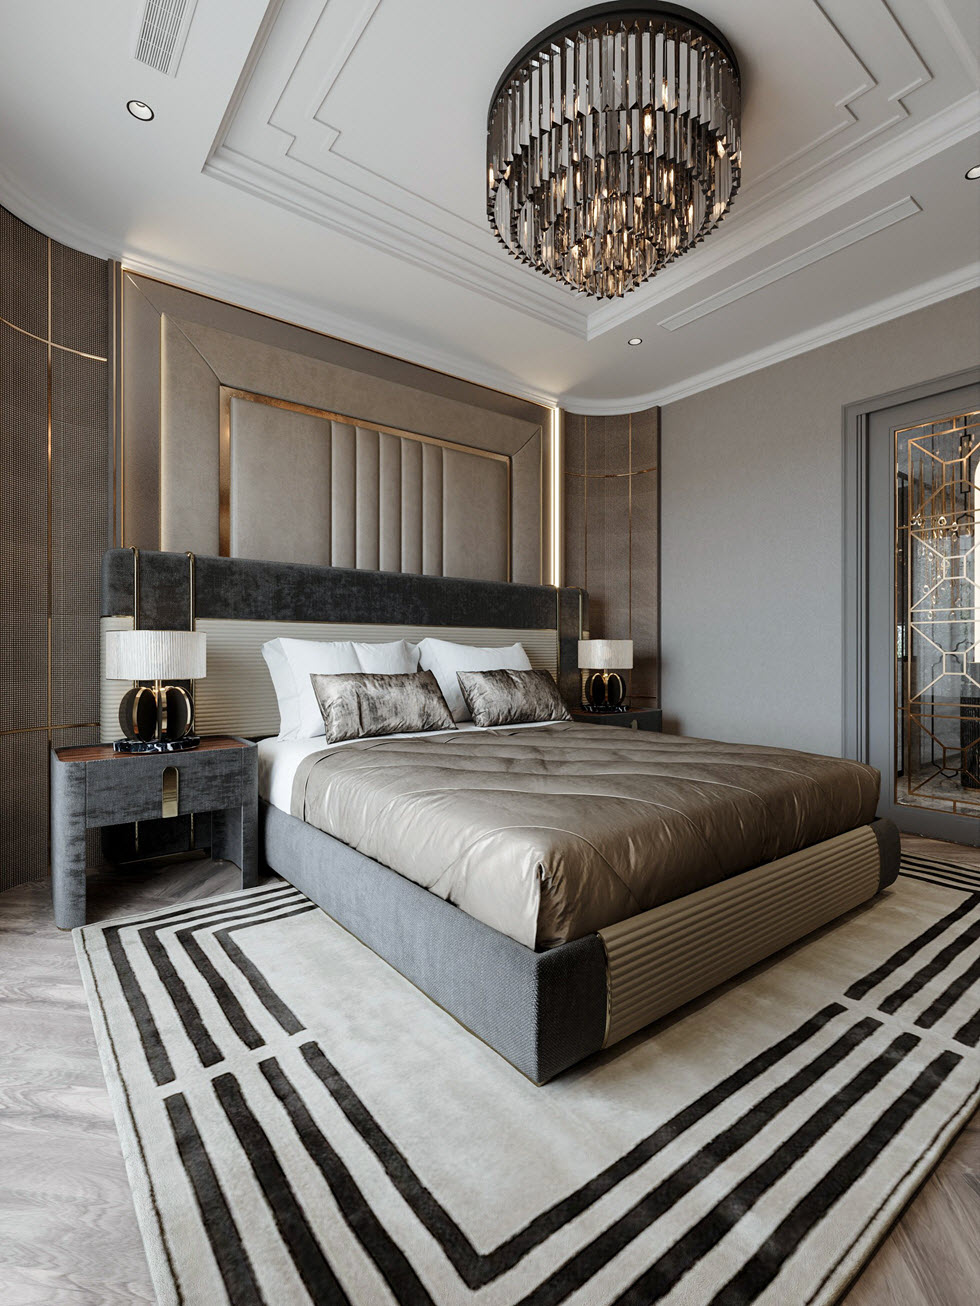 Thiết kế nội thất phòng ngủ master đậm chất Luxury với giường nệm cao cấp, tab đối xứng và decor tường đầu giường ấn tượng.